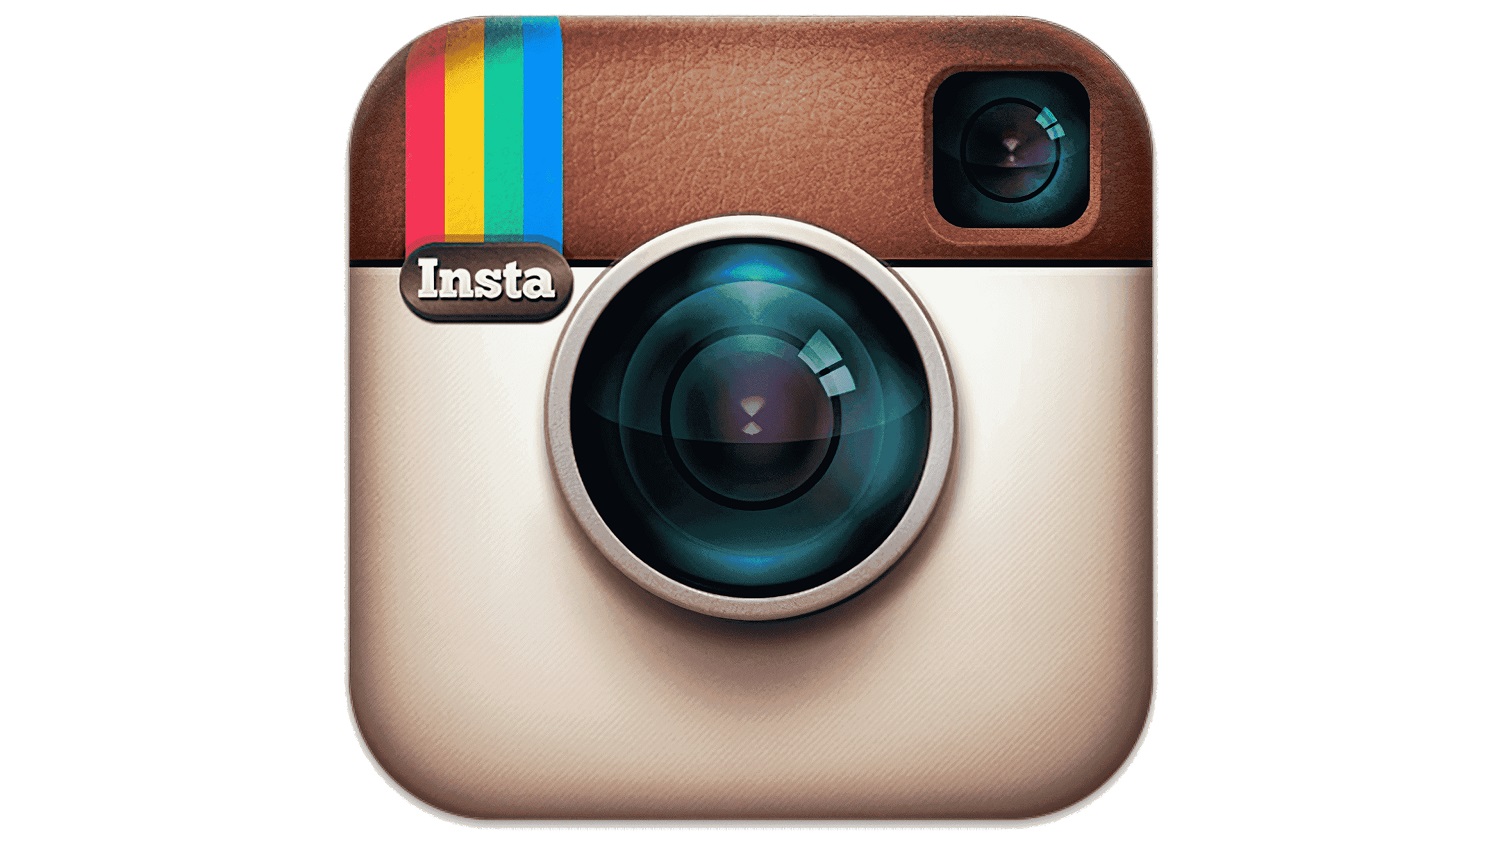 Make Instagram Instagram Again! ร่วมลงชื่อให้ Instagram หยุดทำตัวเหมือนเป็น TikTok เสียที!